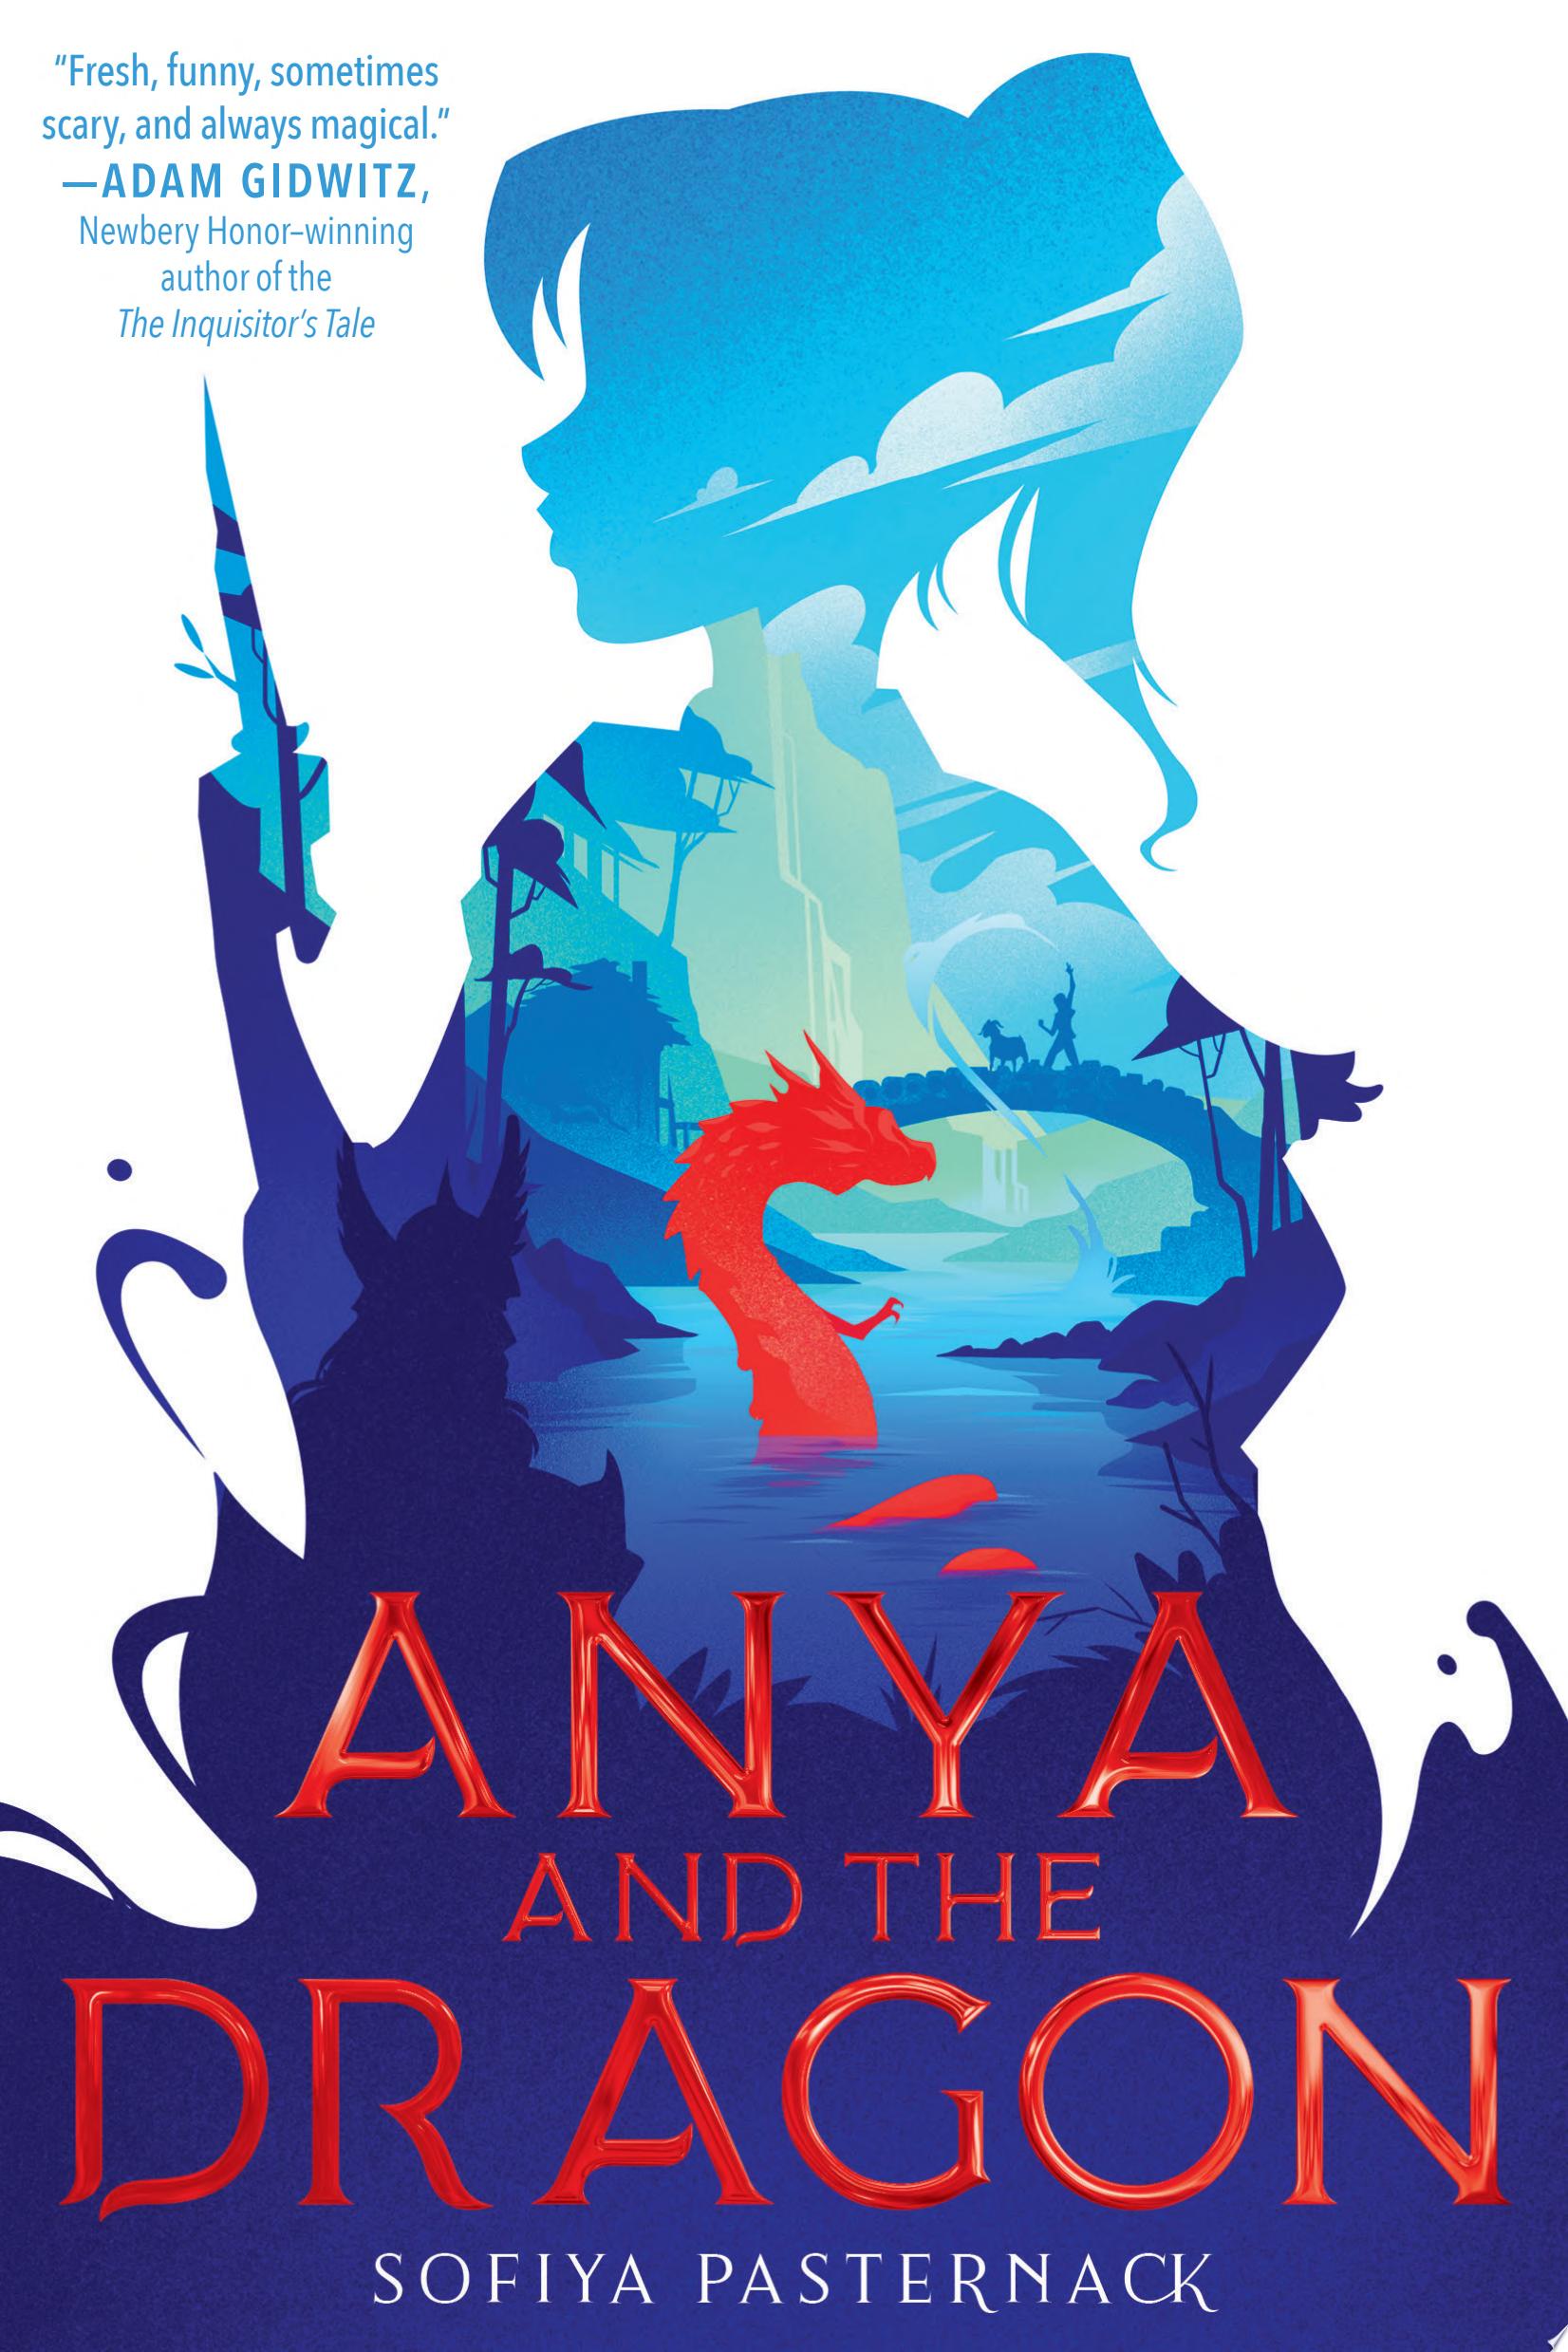 Image for "Anya and the Dragon"